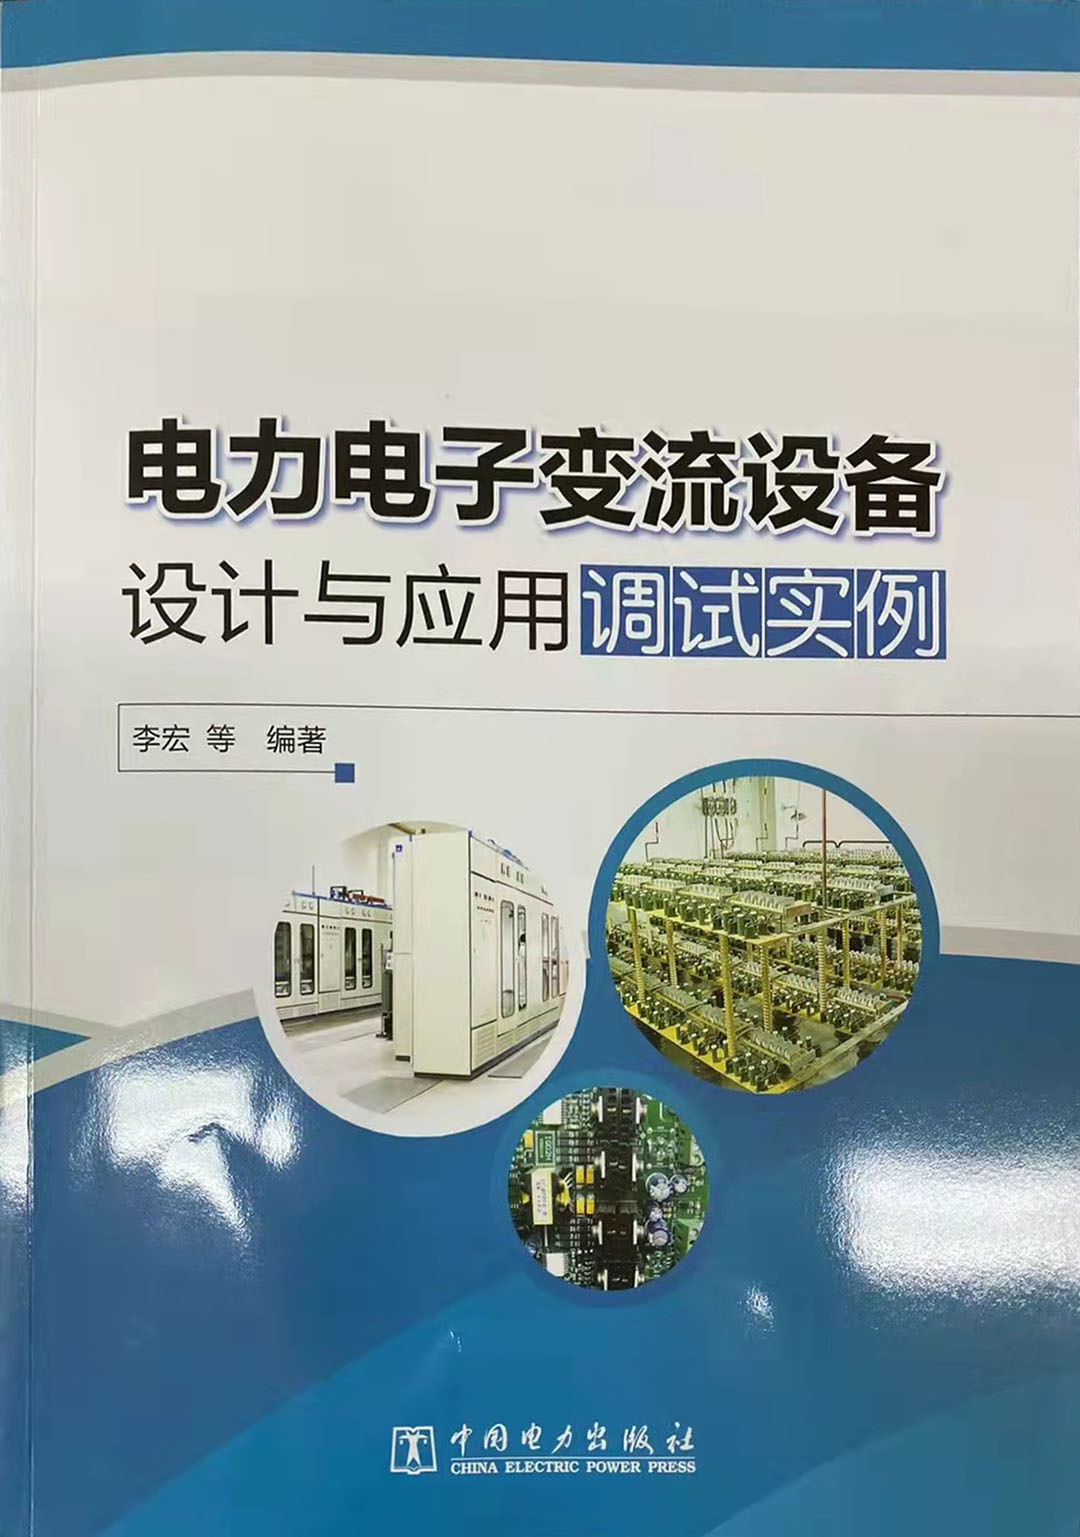 自主创新、科技引领——铜牛整流变载入中国电力出版社 《电力电子变流设备》